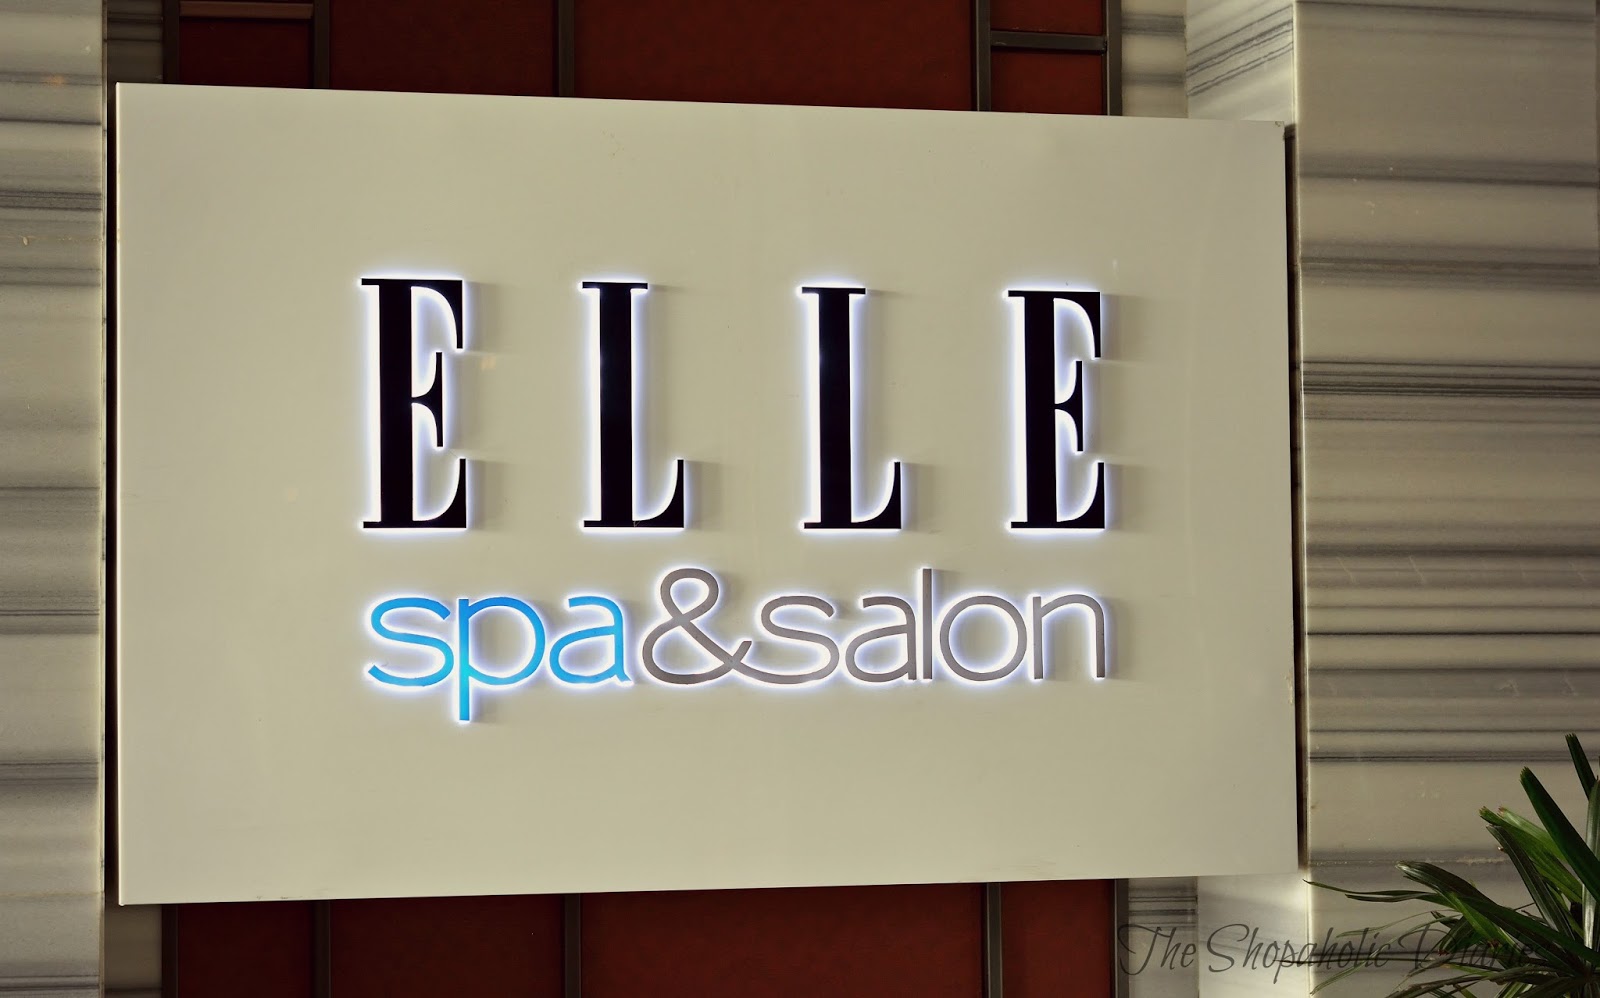 Is Elle a luxury brand?